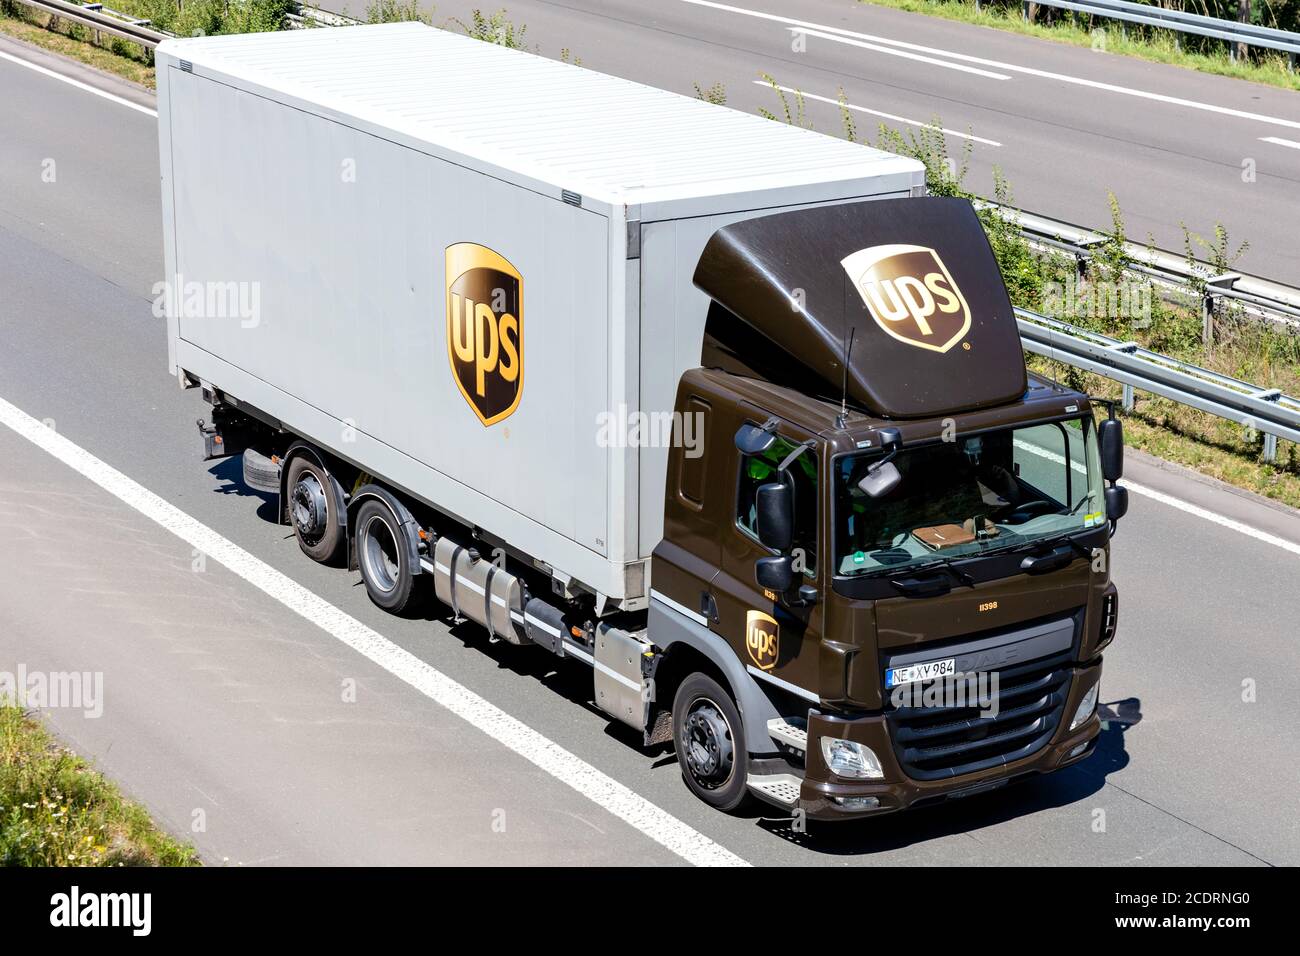 UPS per carrozzerie DAF SWOP in autostrada. UPS è la più grande azienda al mondo per la fornitura di pacchetti e un fornitore di soluzioni per la gestione della catena di fornitura. Foto Stock